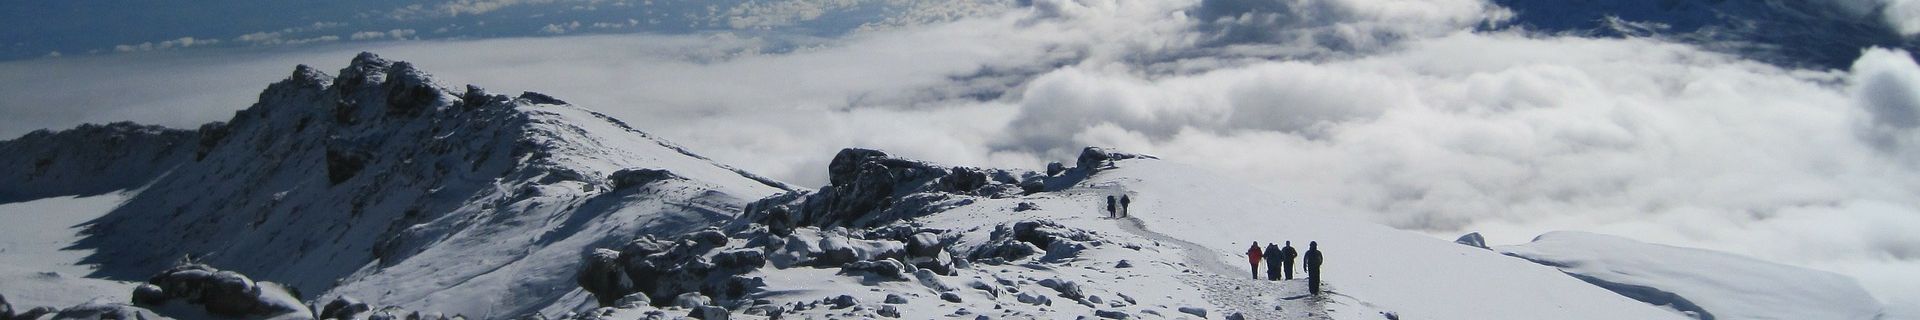 Kilimanjaro Trekking Tour alpine zone